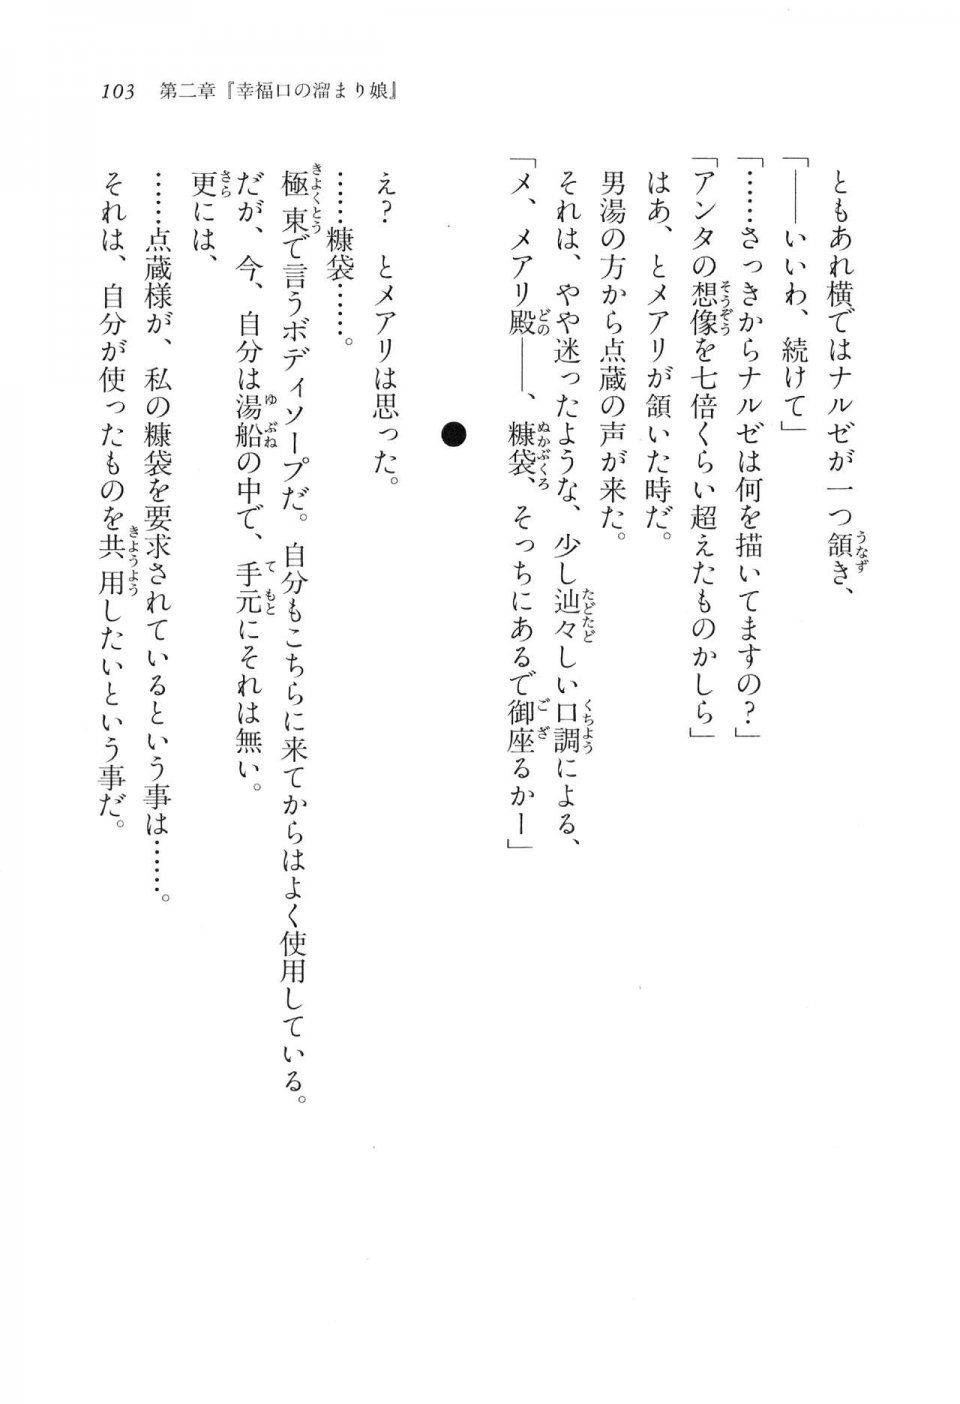 Kyoukai Senjou no Horizon LN Vol 16(7A) - Photo #103